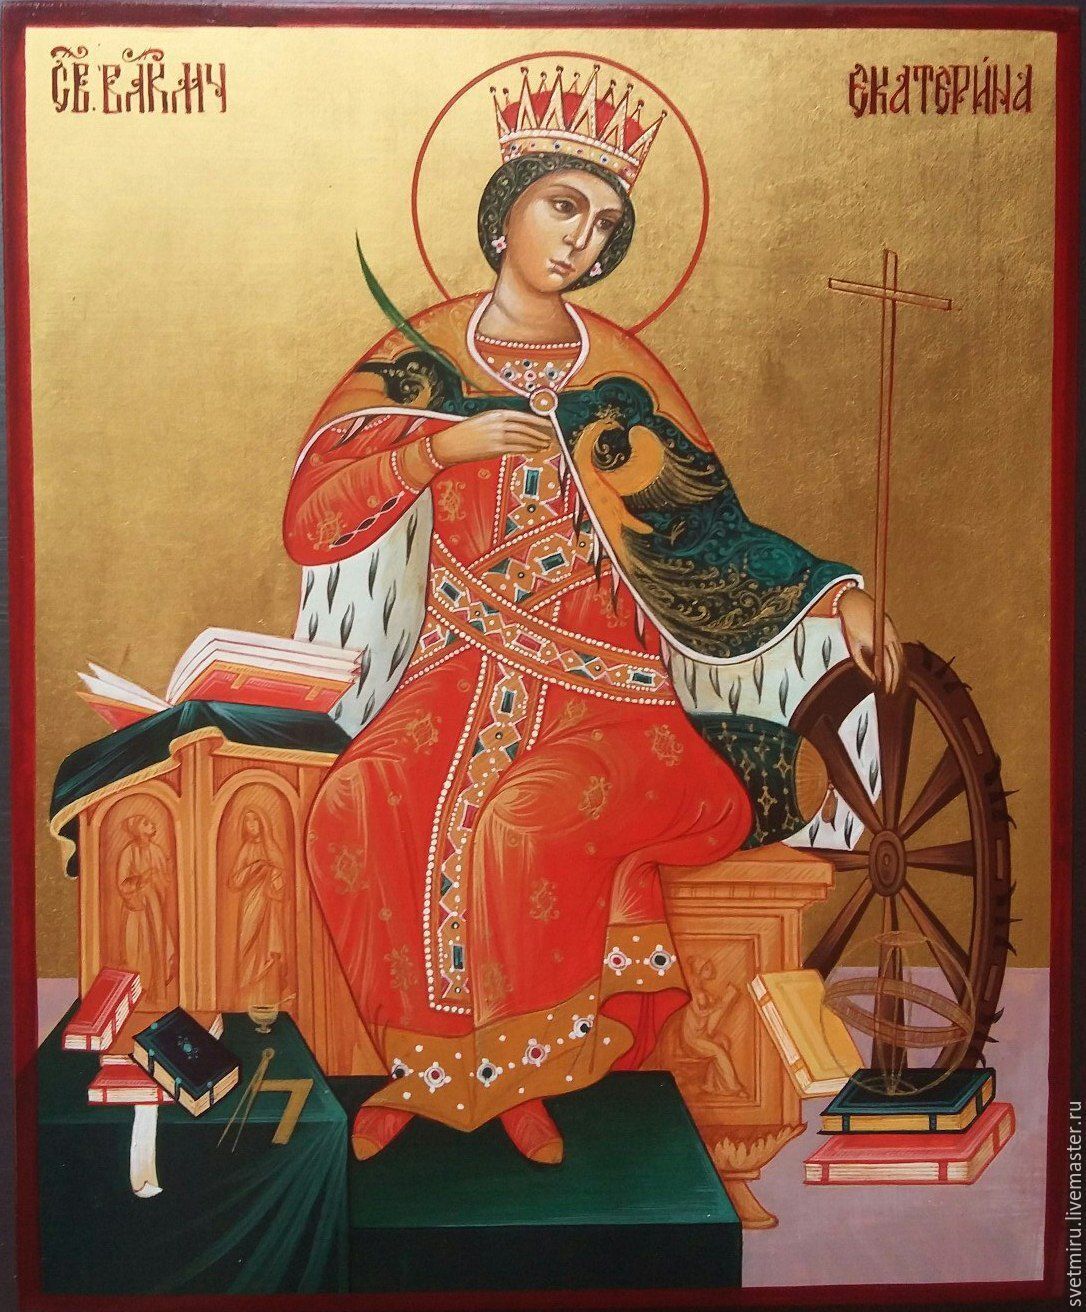 Великомучениця Катерина народилася 287 року в Олександрії